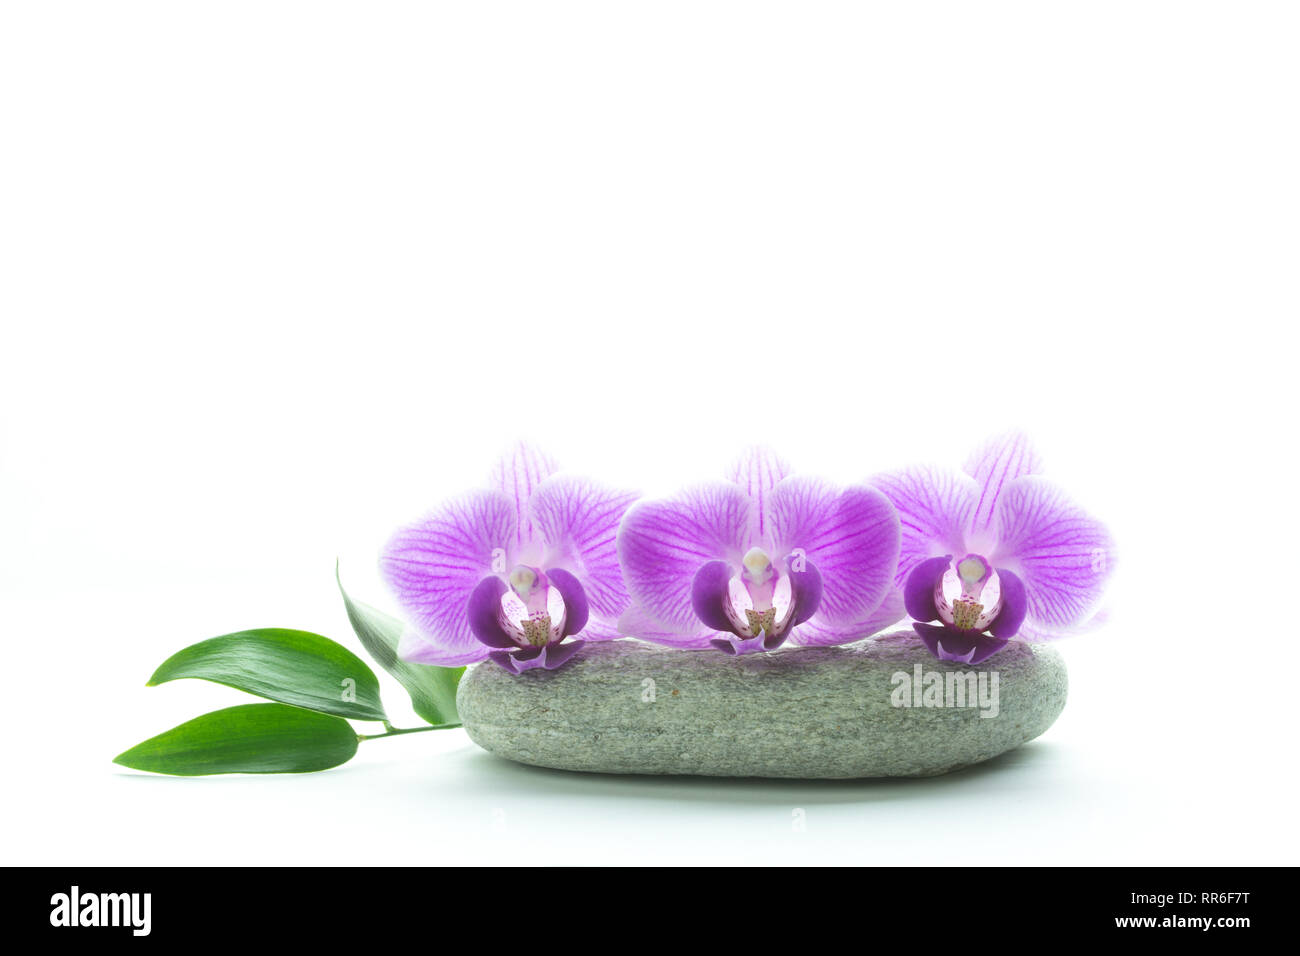 Konzept od Schönheit und Frische - Drei purple orchid Blüten auf grau Roundstone und grüne Blätter auf weißem Hintergrund Stockfoto